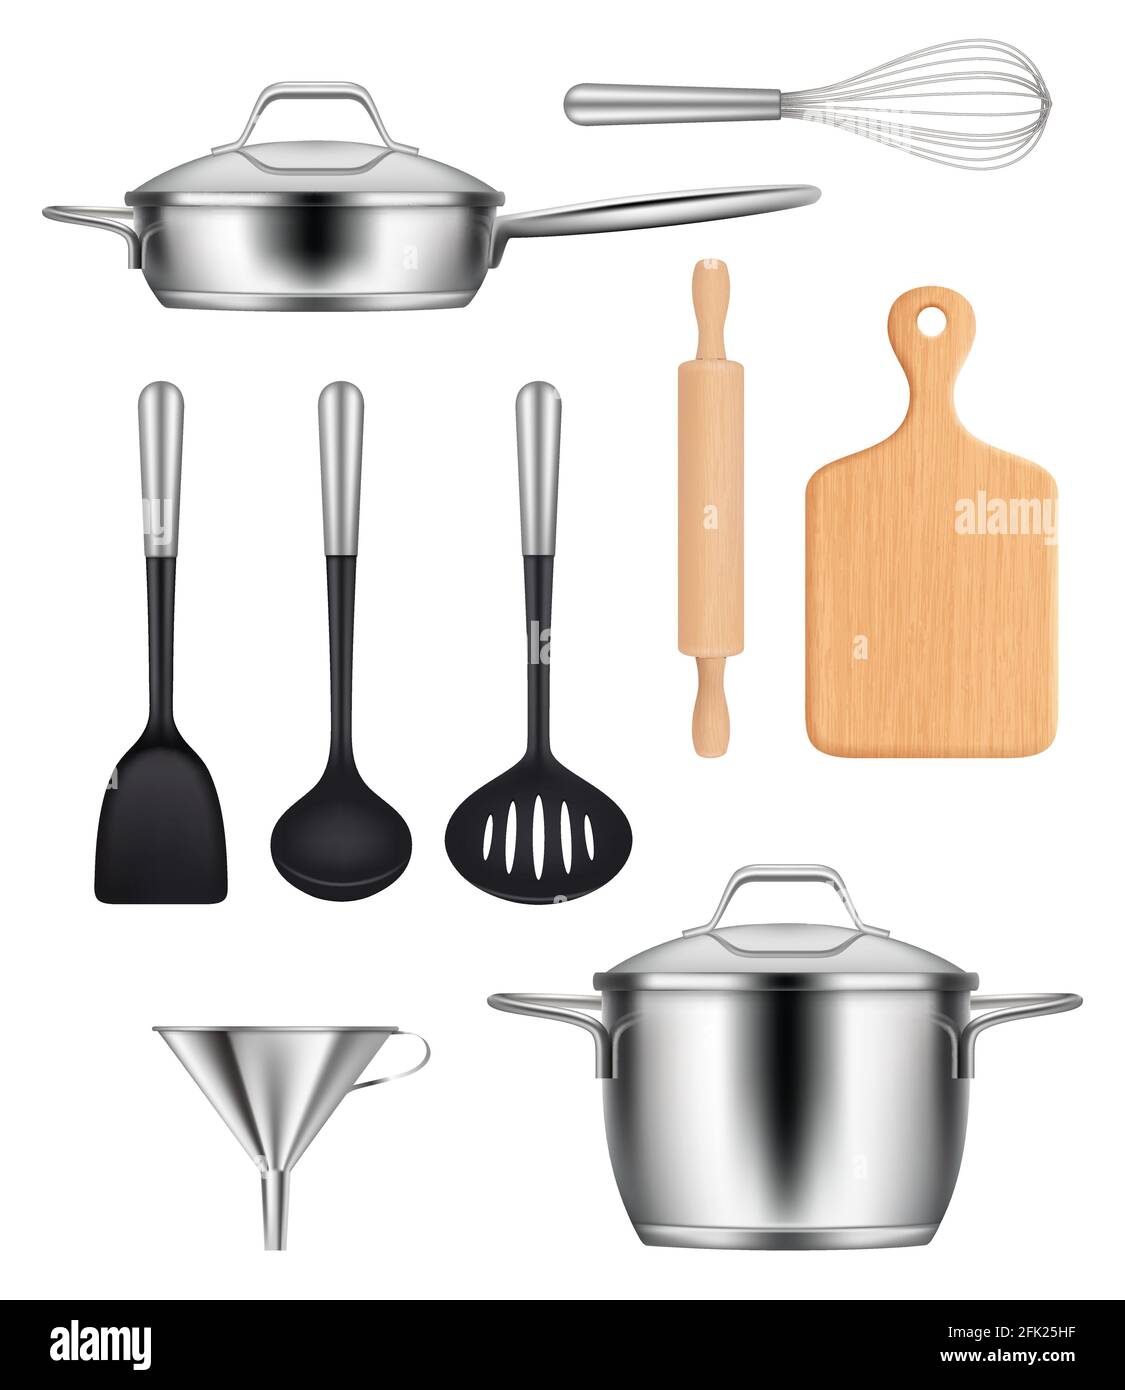 Küchenutensilien. Pfannen Stahl Topf Grills Messer Gegenstände zum Kochen Lebensmittel Vektor realistische Bilder set Stock Vektor